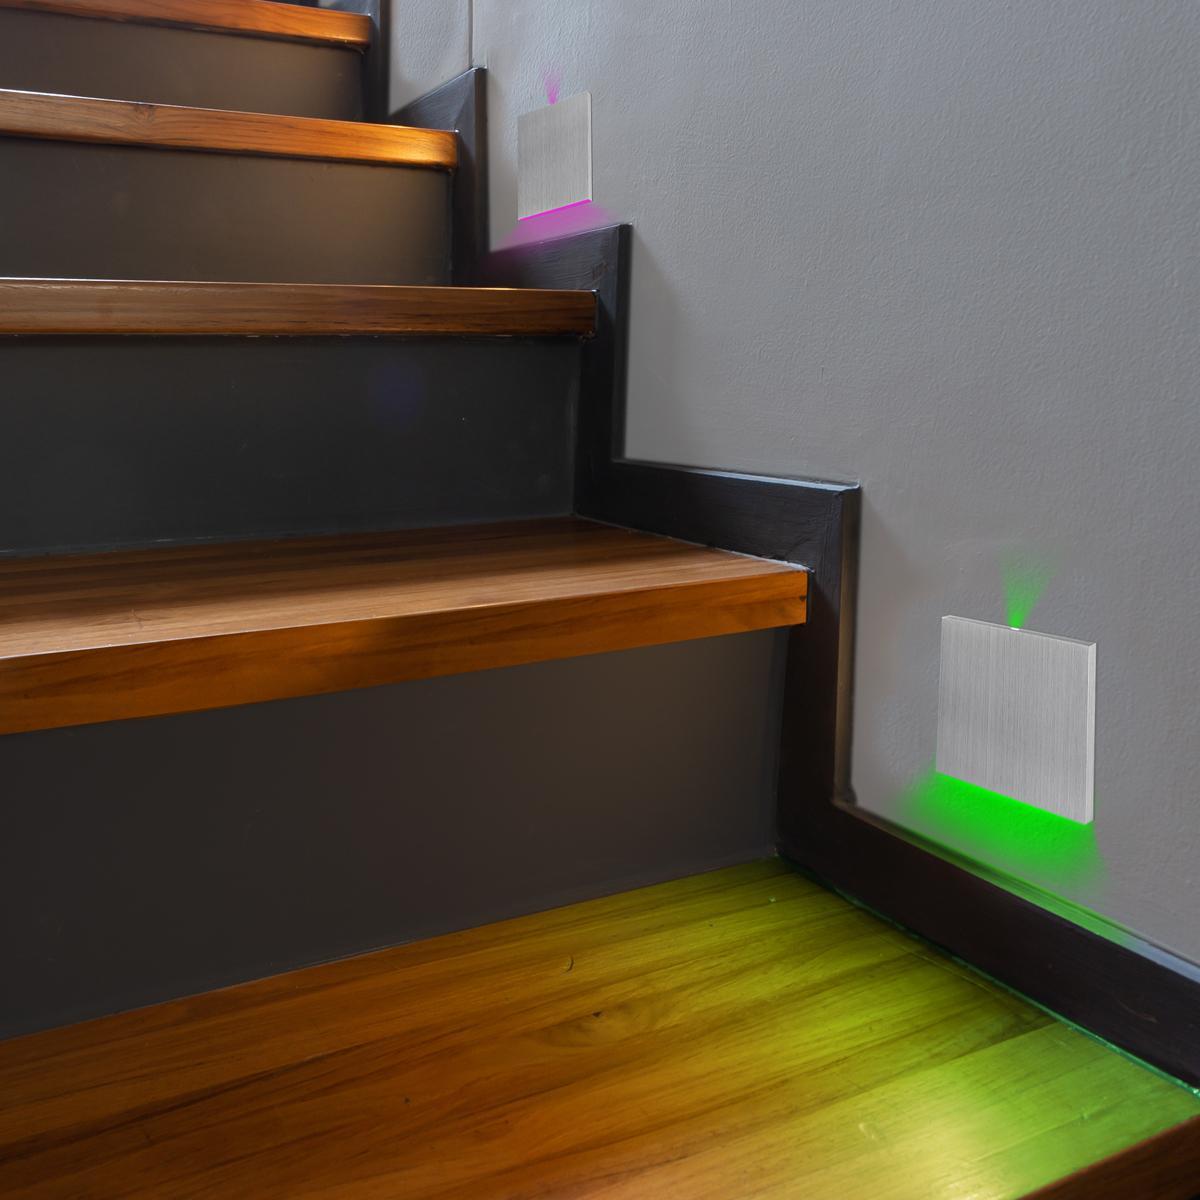 LED Treppenbeleuchtung 230V Wandeinbauleuchte eckig Alu-gebürstet - Unterteil Lichtfarbe: RGB Warmweiß 3W - Lichtaustritt: Luga